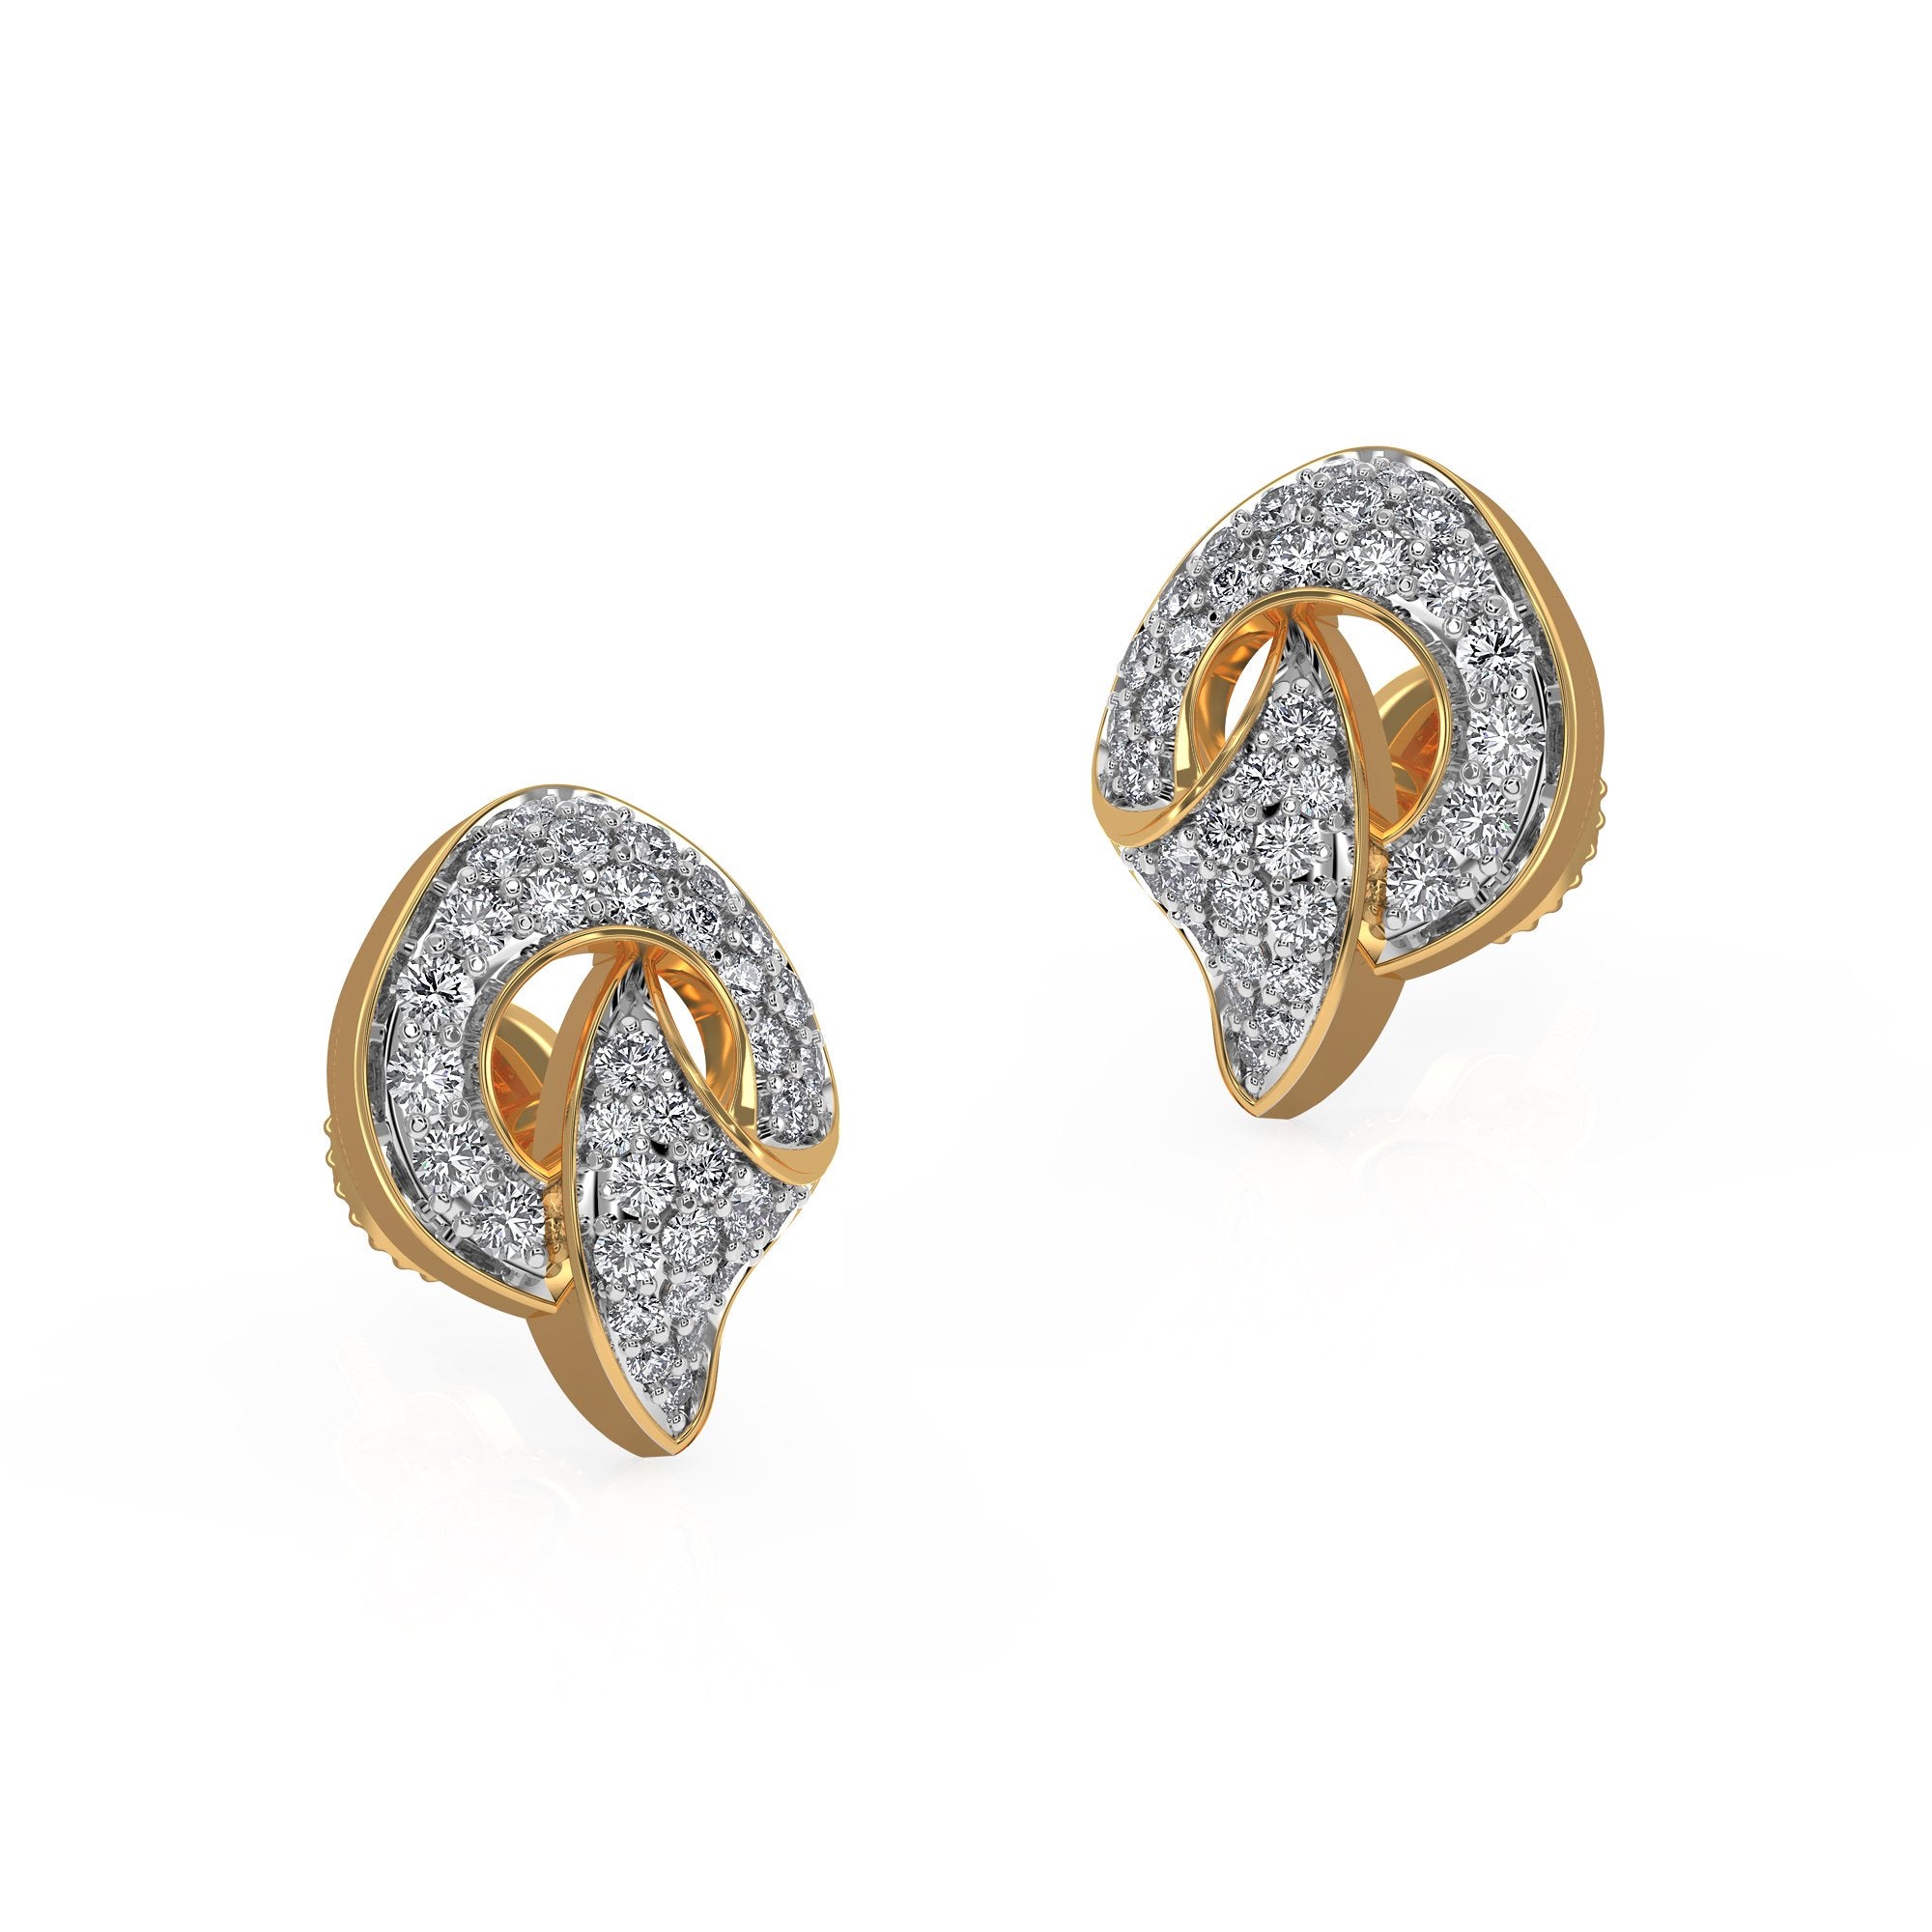 Buy Diamond Earrings Online | JCS Jewellers – JCS JEWEL CREATIONS